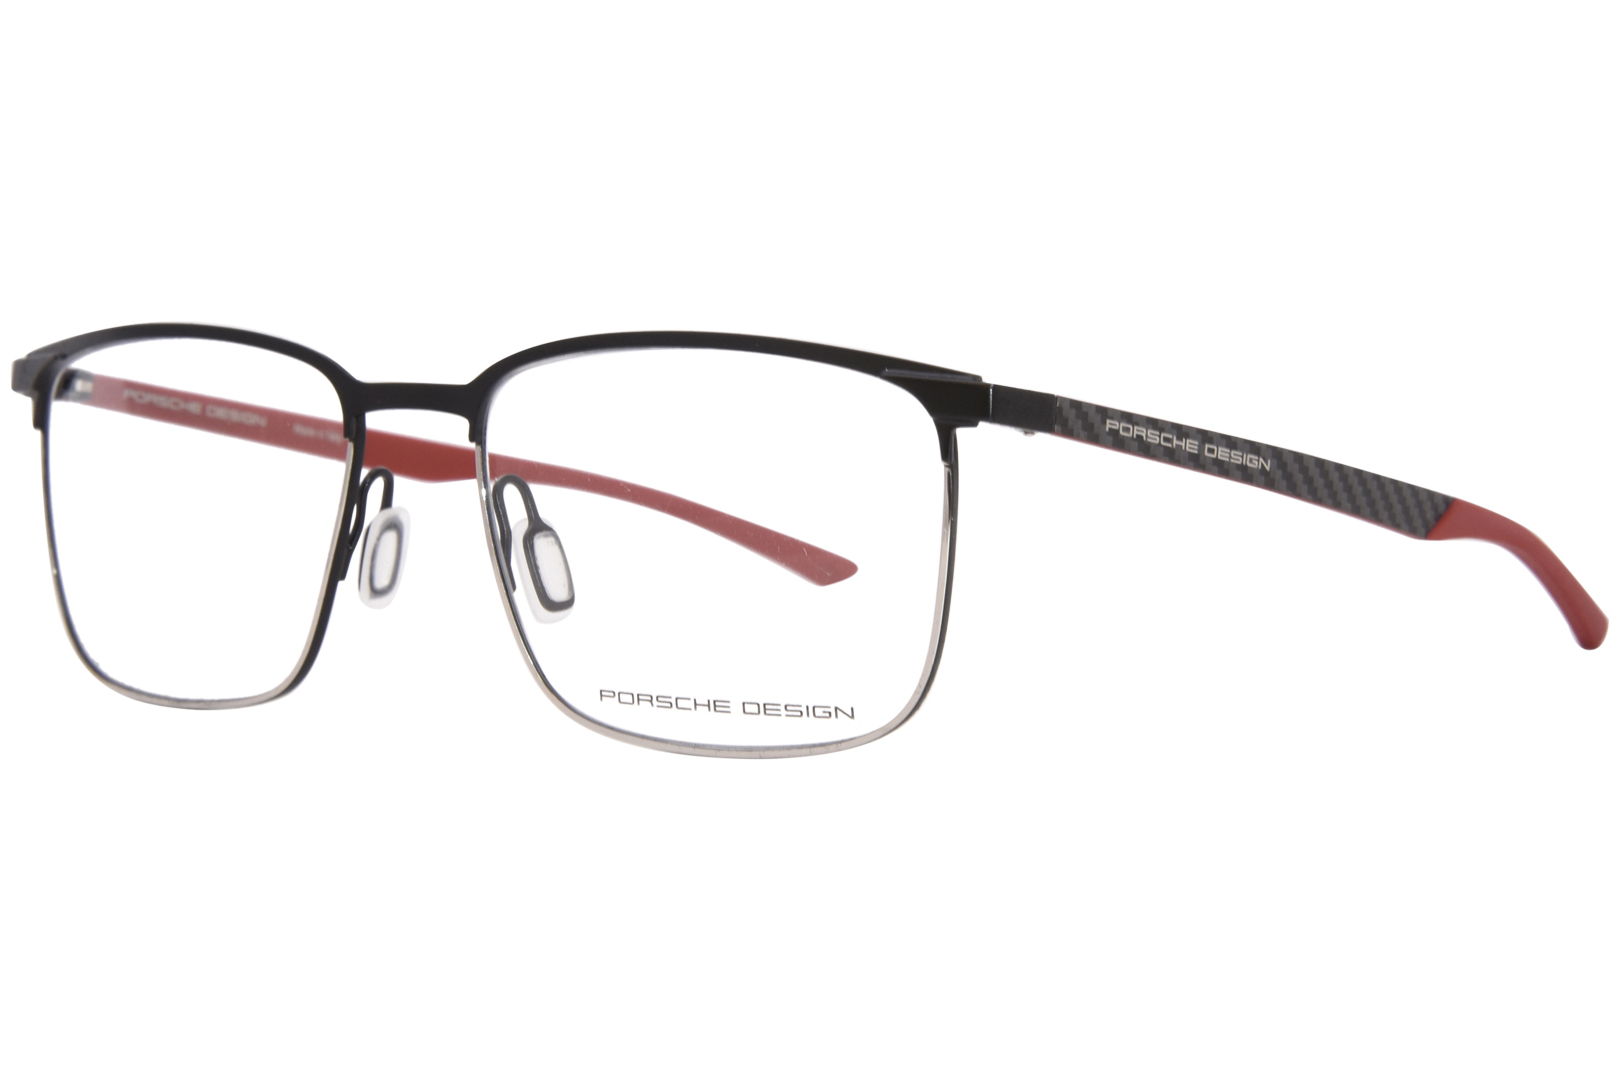 Porsche Design P8753 Eyeglasses Men's Full Rim Rectangle Shape ...